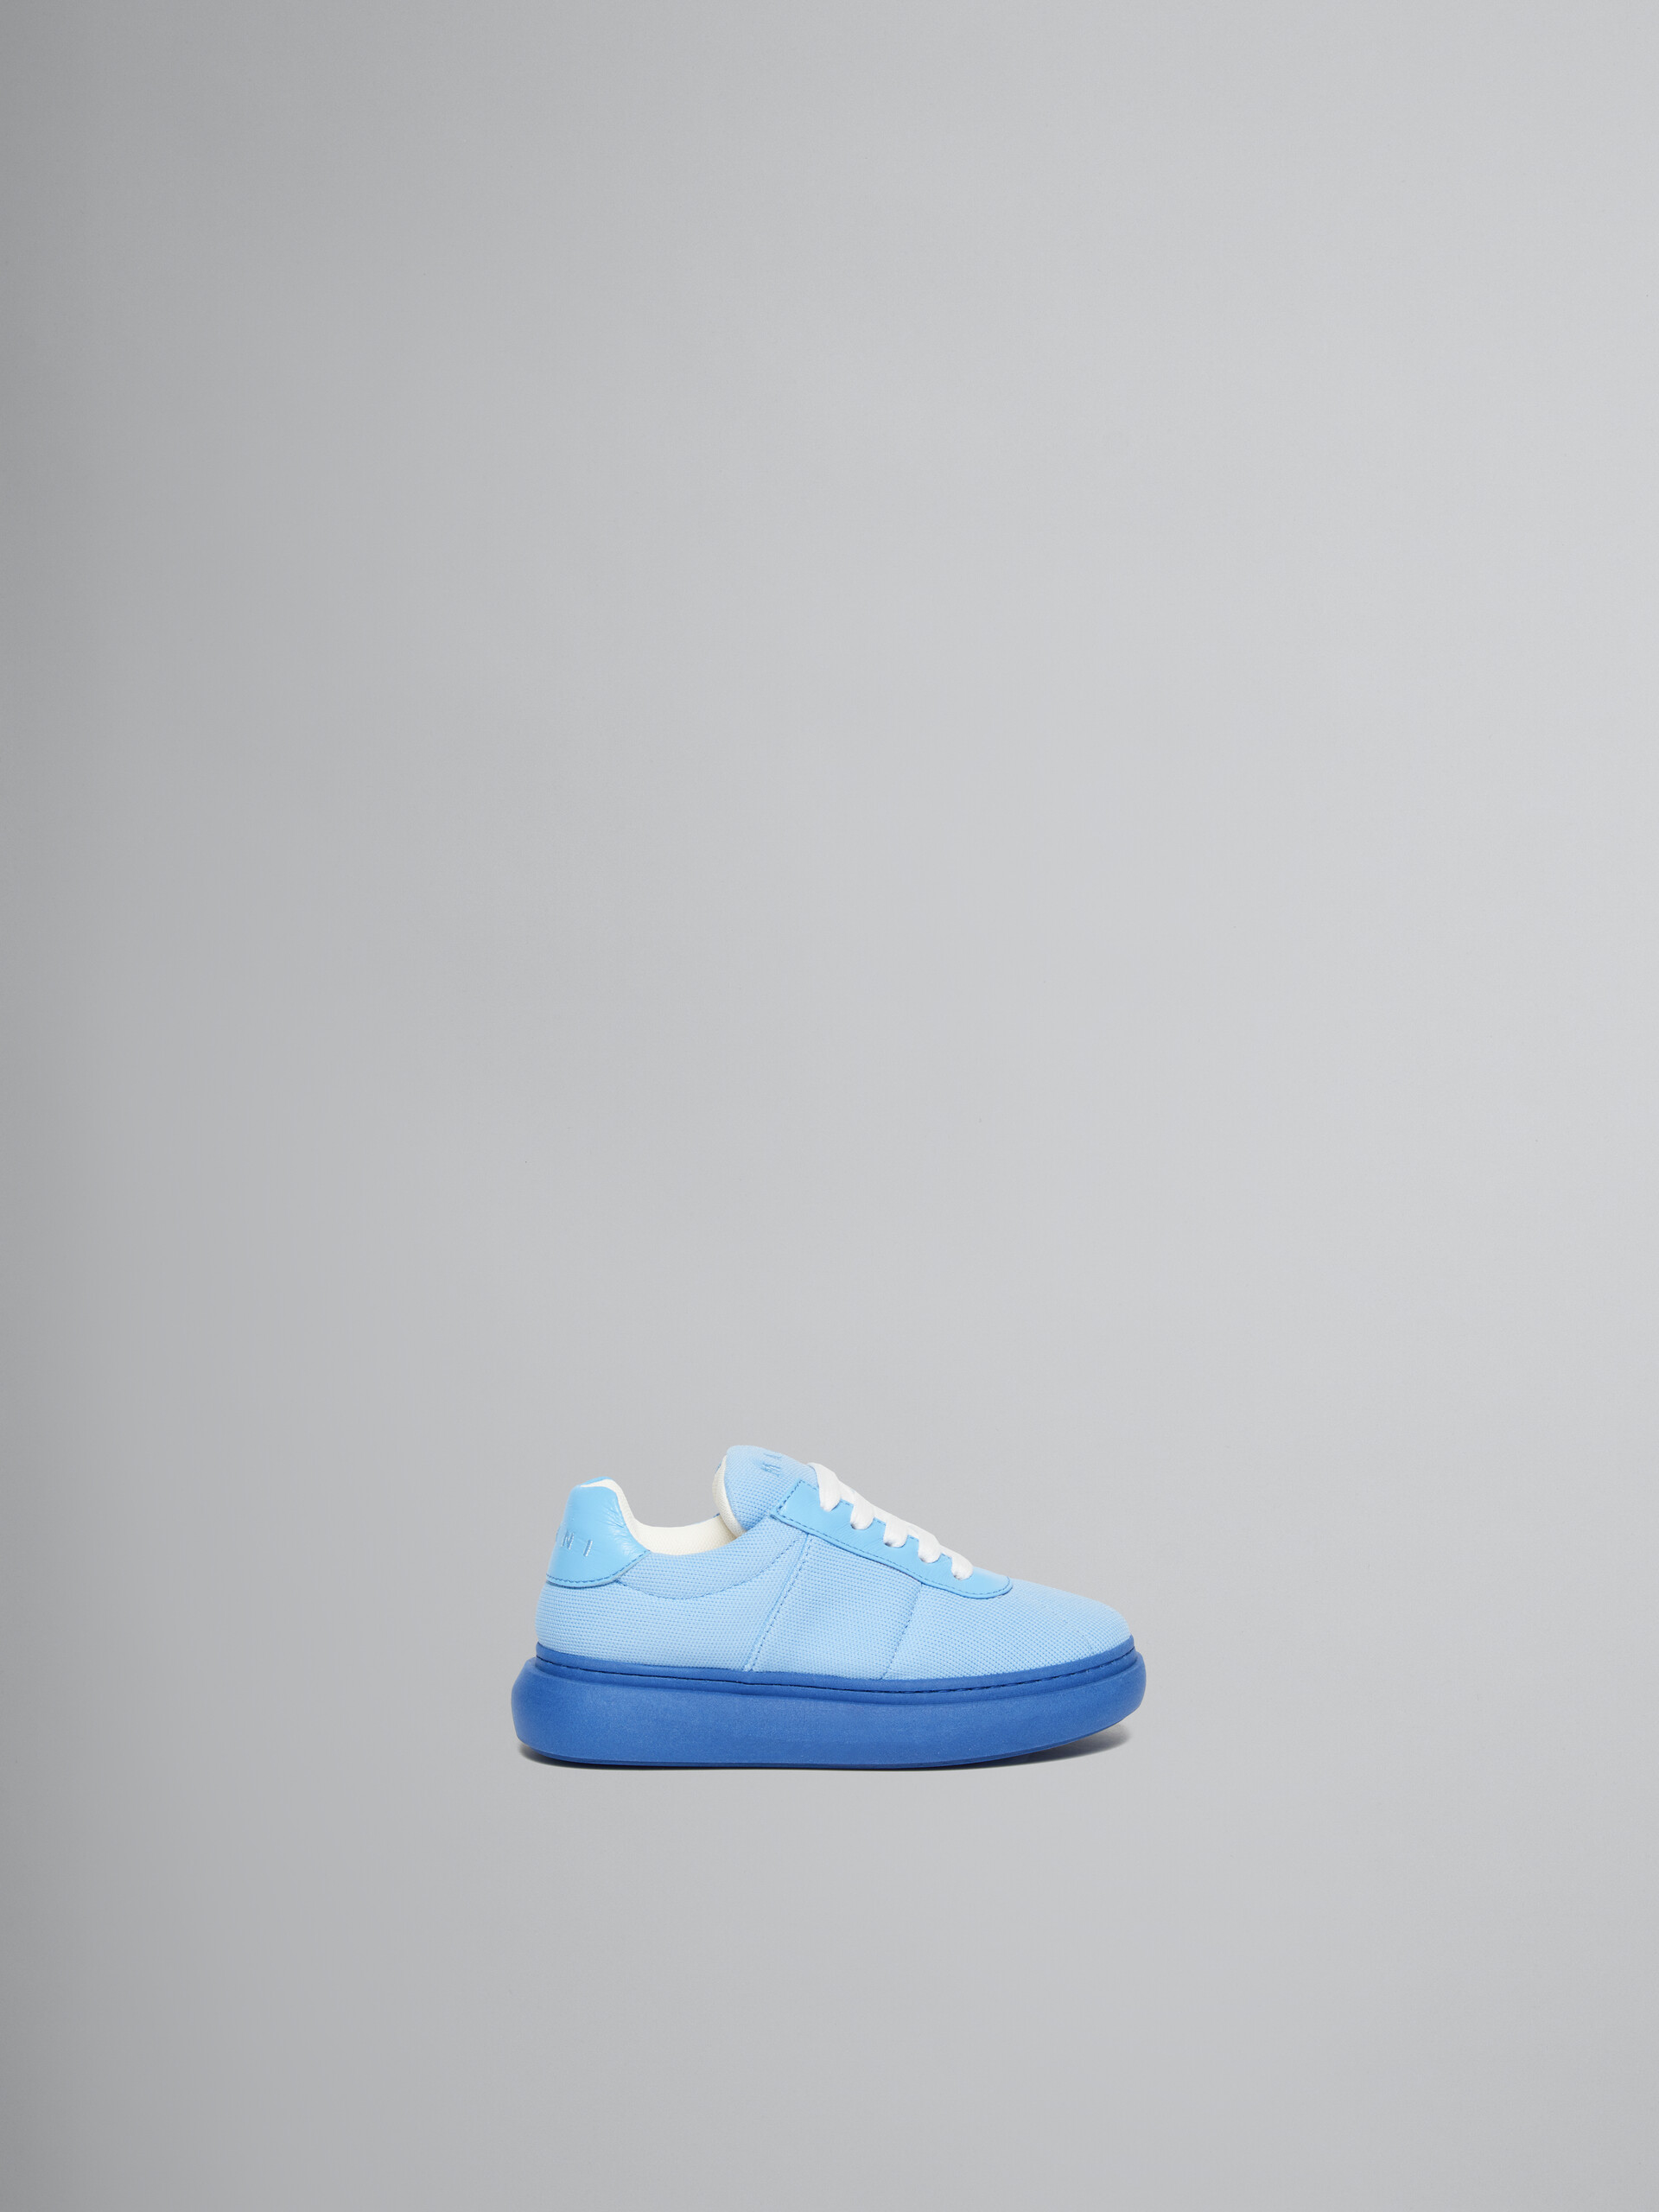 Sneakers en cuir matelassé bleu clair - ENFANT - Image 1